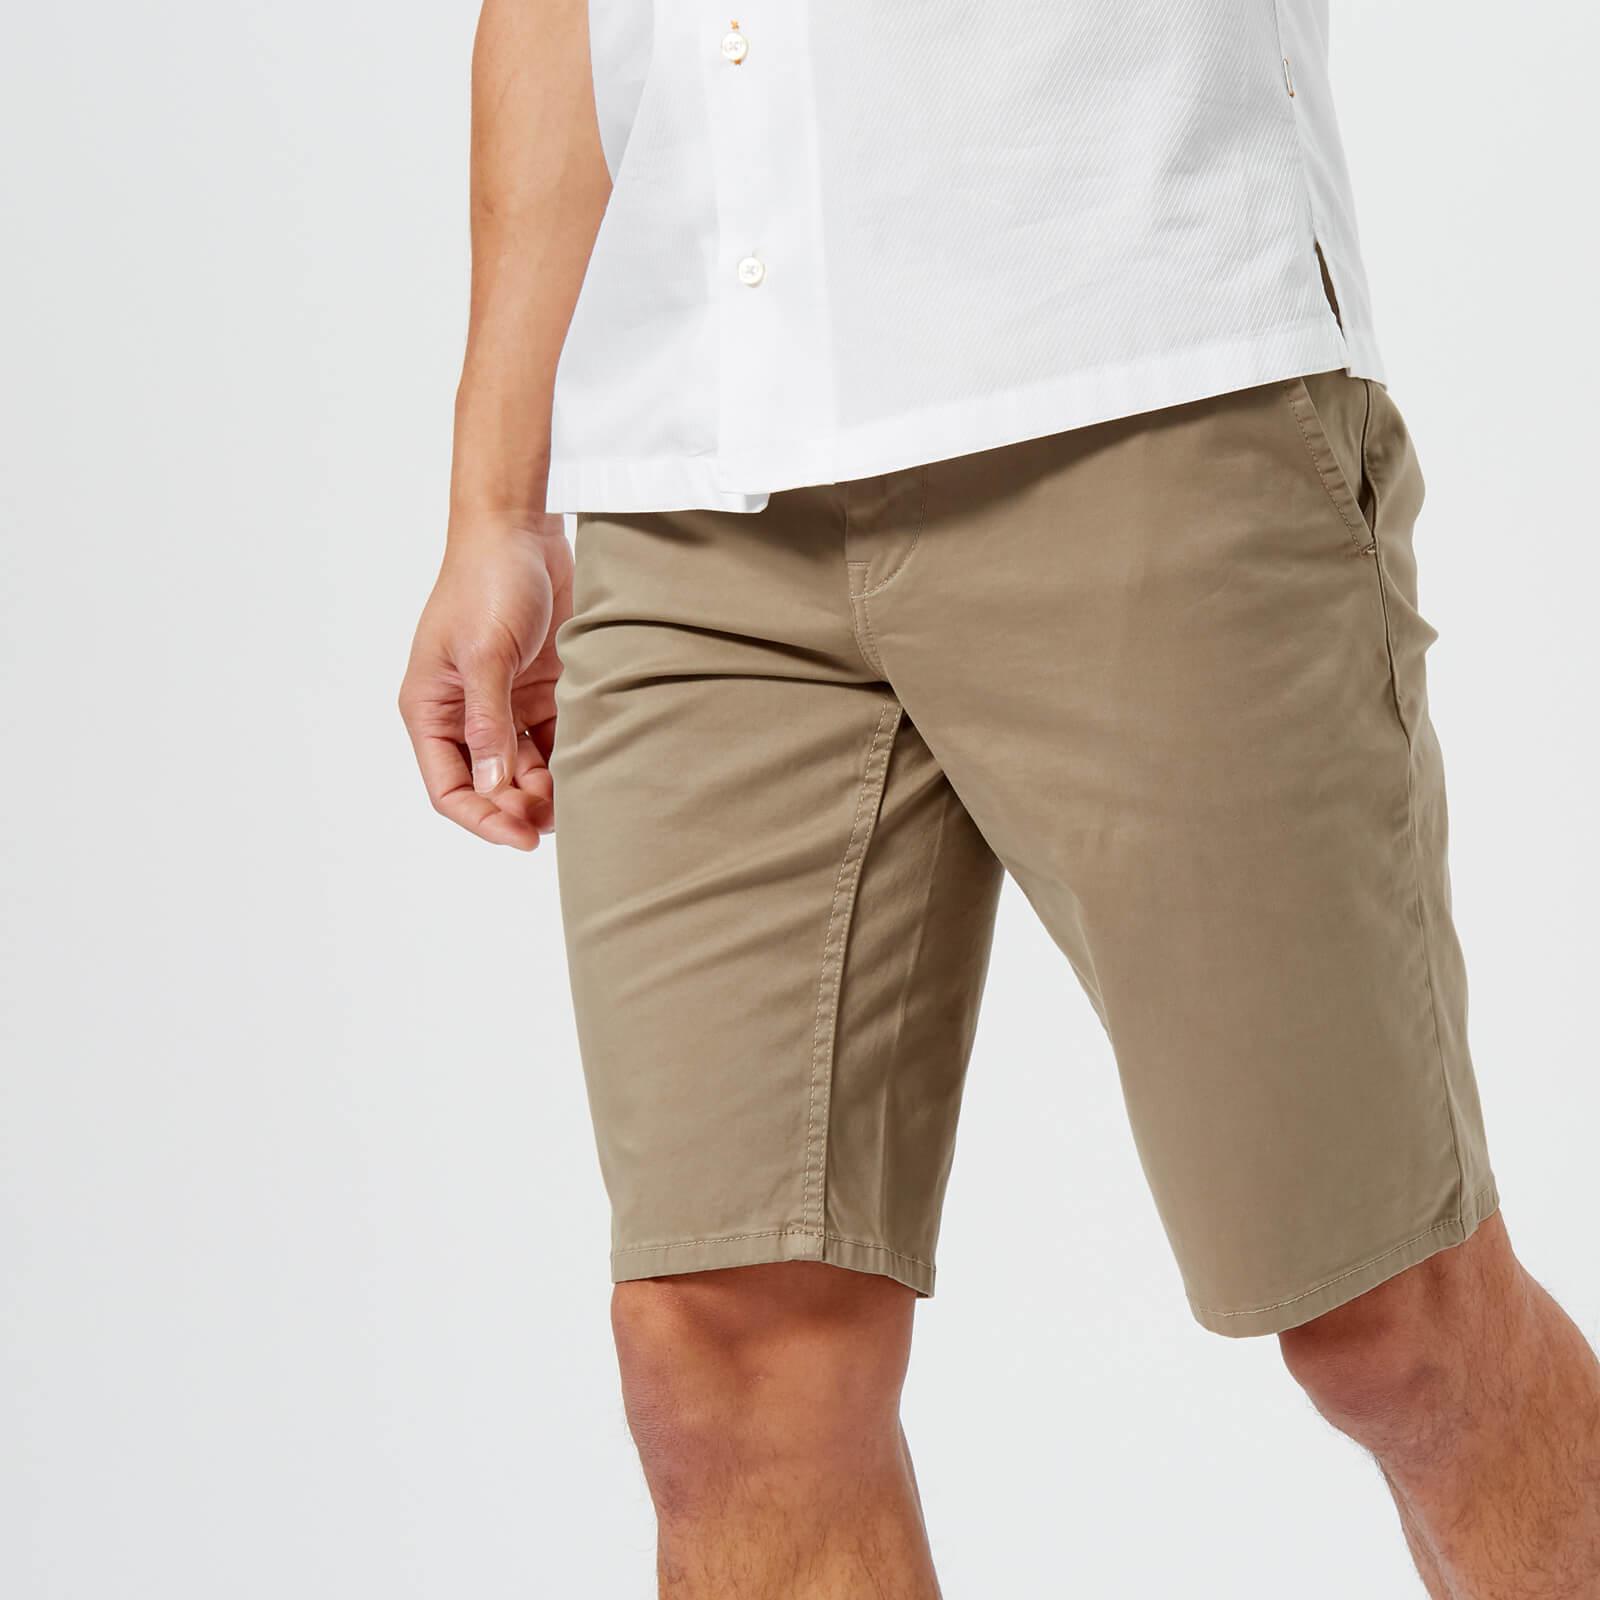 BOSS Orange Cotton Schino Slim Shorts in Beige (Natural) for Men - Lyst